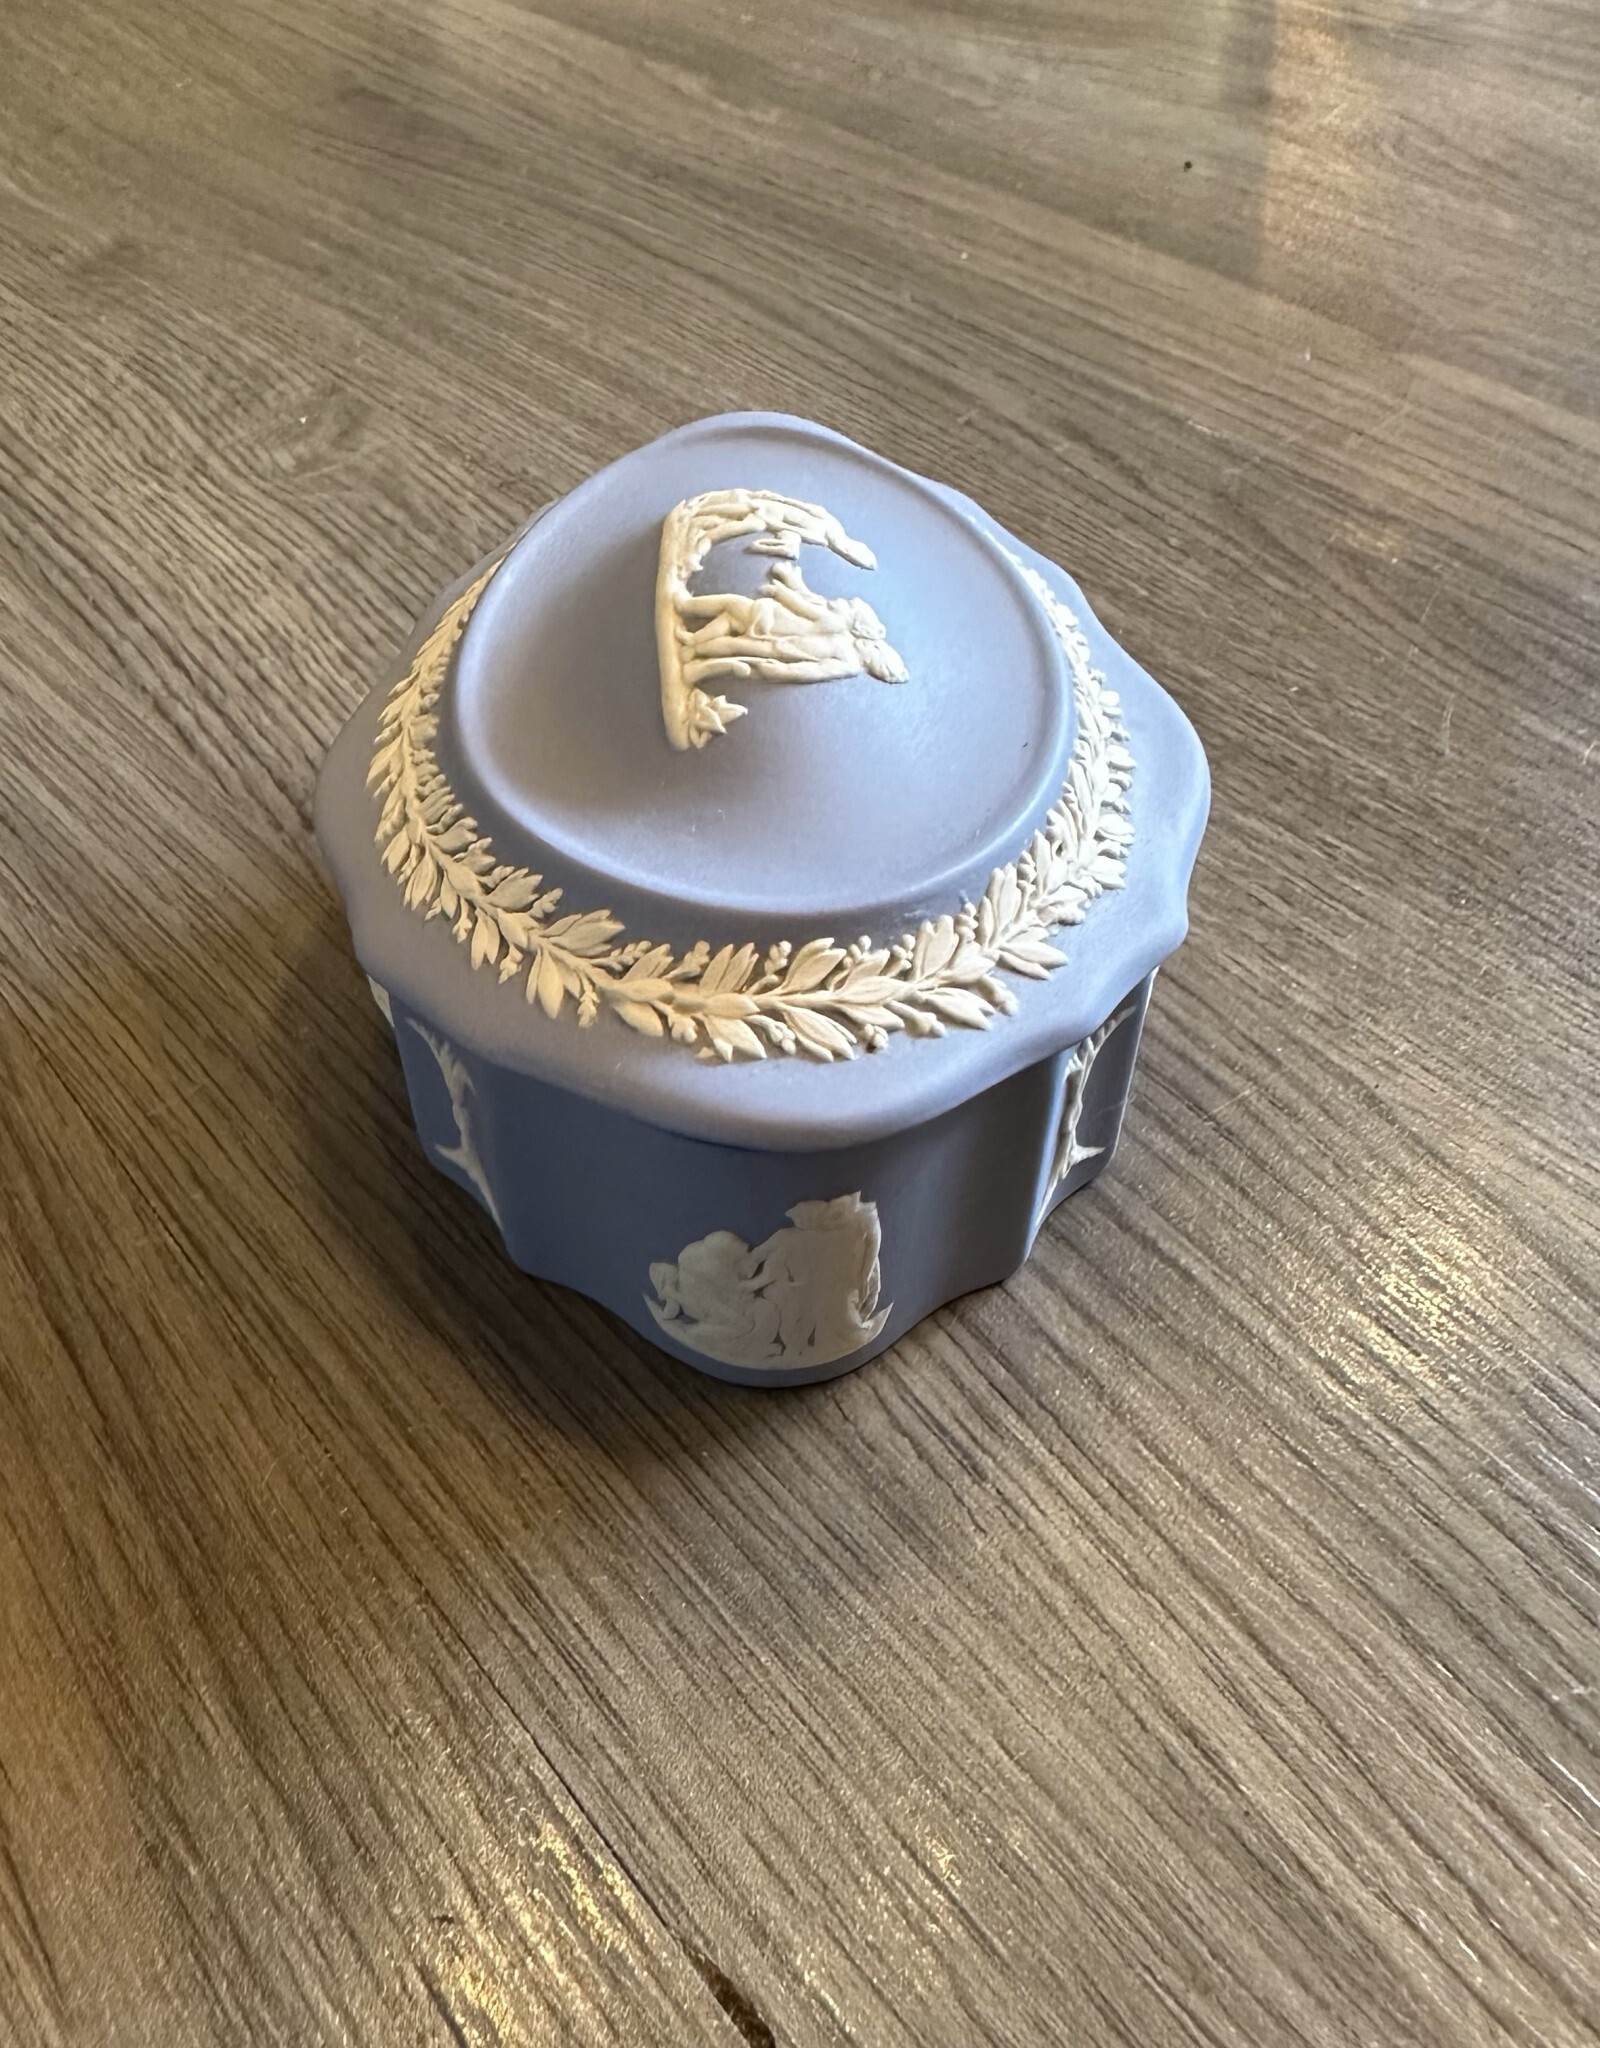 Purple Pigeon Treasures Jasperware Jewellery/Trinket box- Oval Lidded